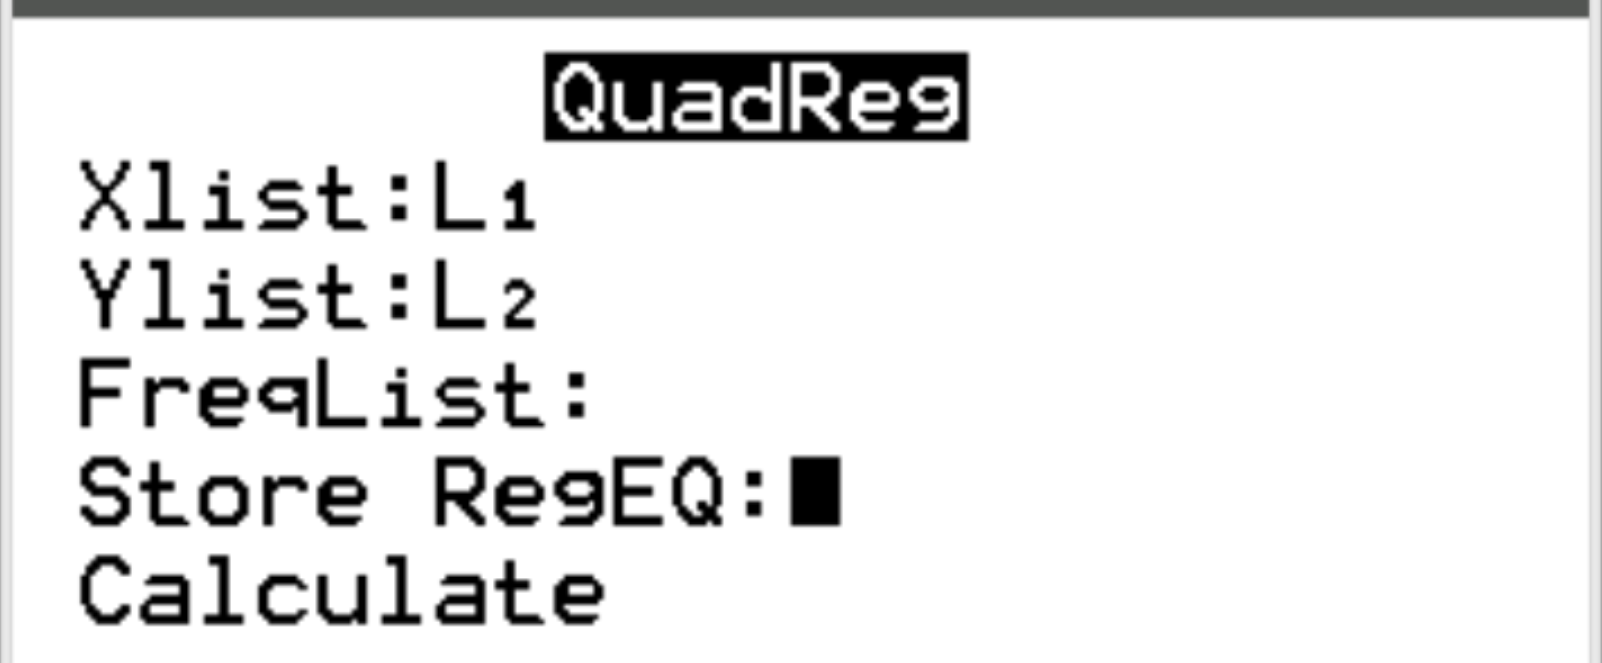 Exemplo de regressão quadrática em uma calculadora TI-84